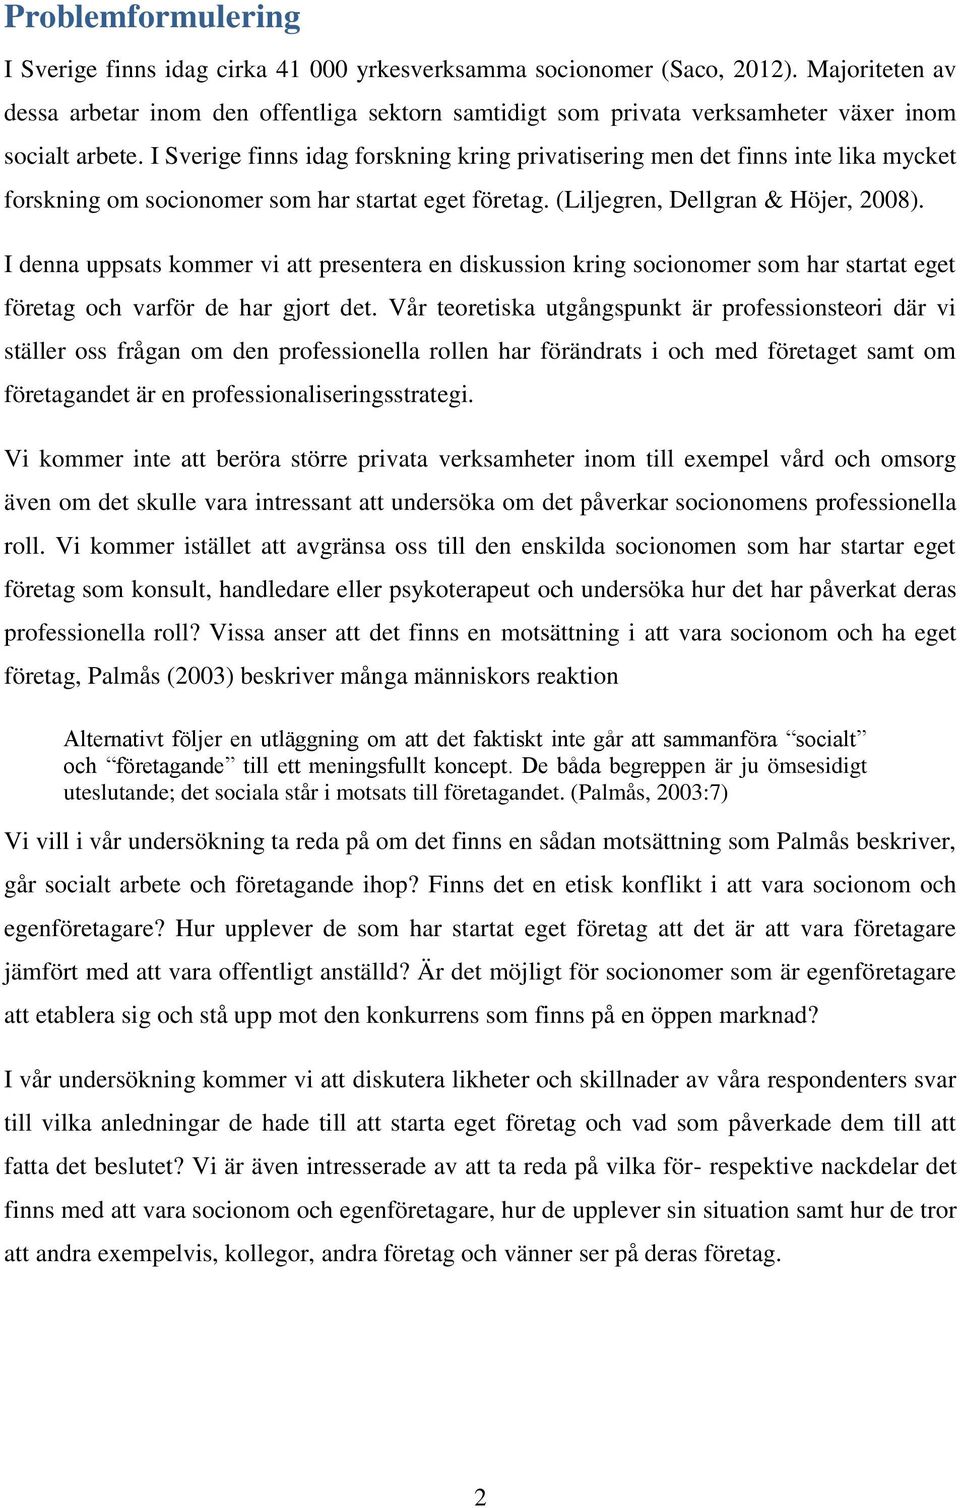 I Sverige finns idag forskning kring privatisering men det finns inte lika mycket forskning om socionomer som har startat eget företag. (Liljegren, Dellgran & Höjer, 2008).